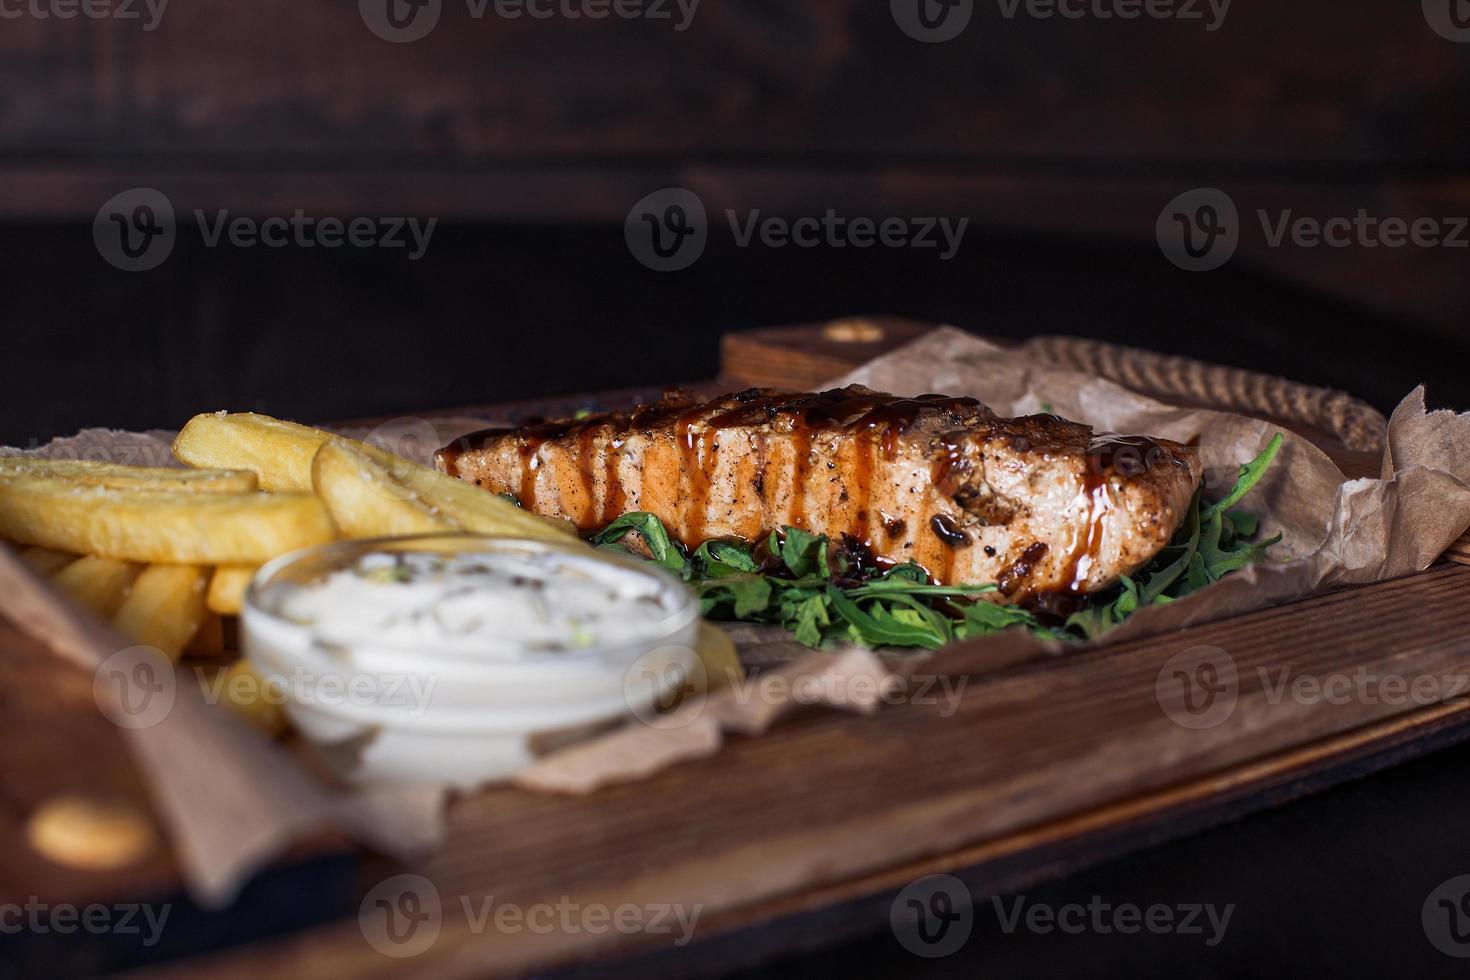 filetto di salmone con patatine fritte su un vassoio di legno, bella porzione, sfondo scuro foto